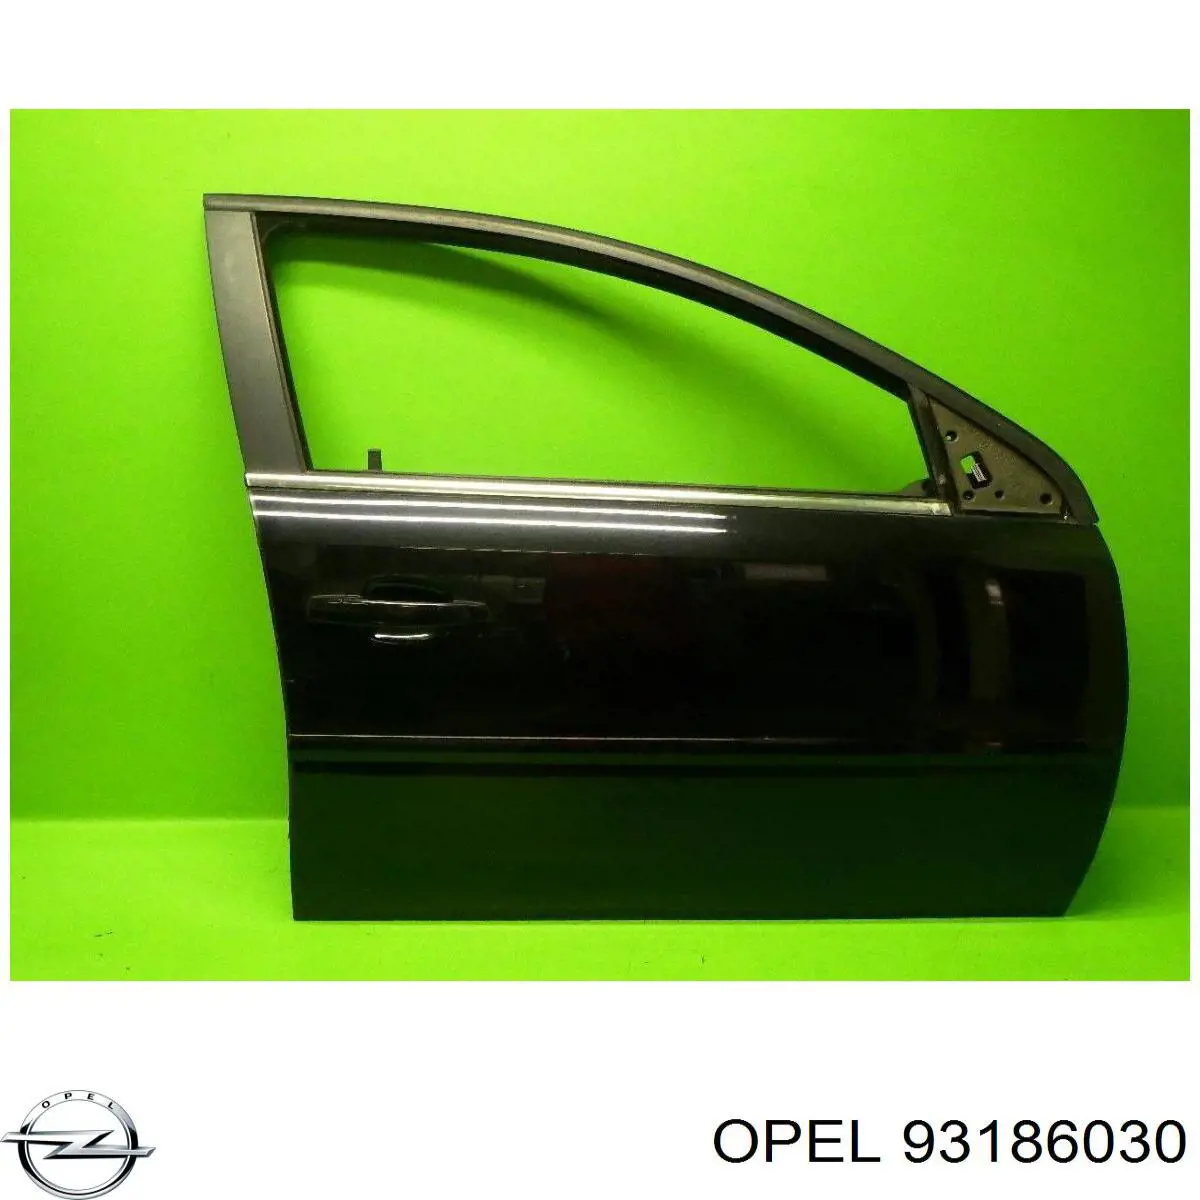 93186030 Opel puerta delantera derecha